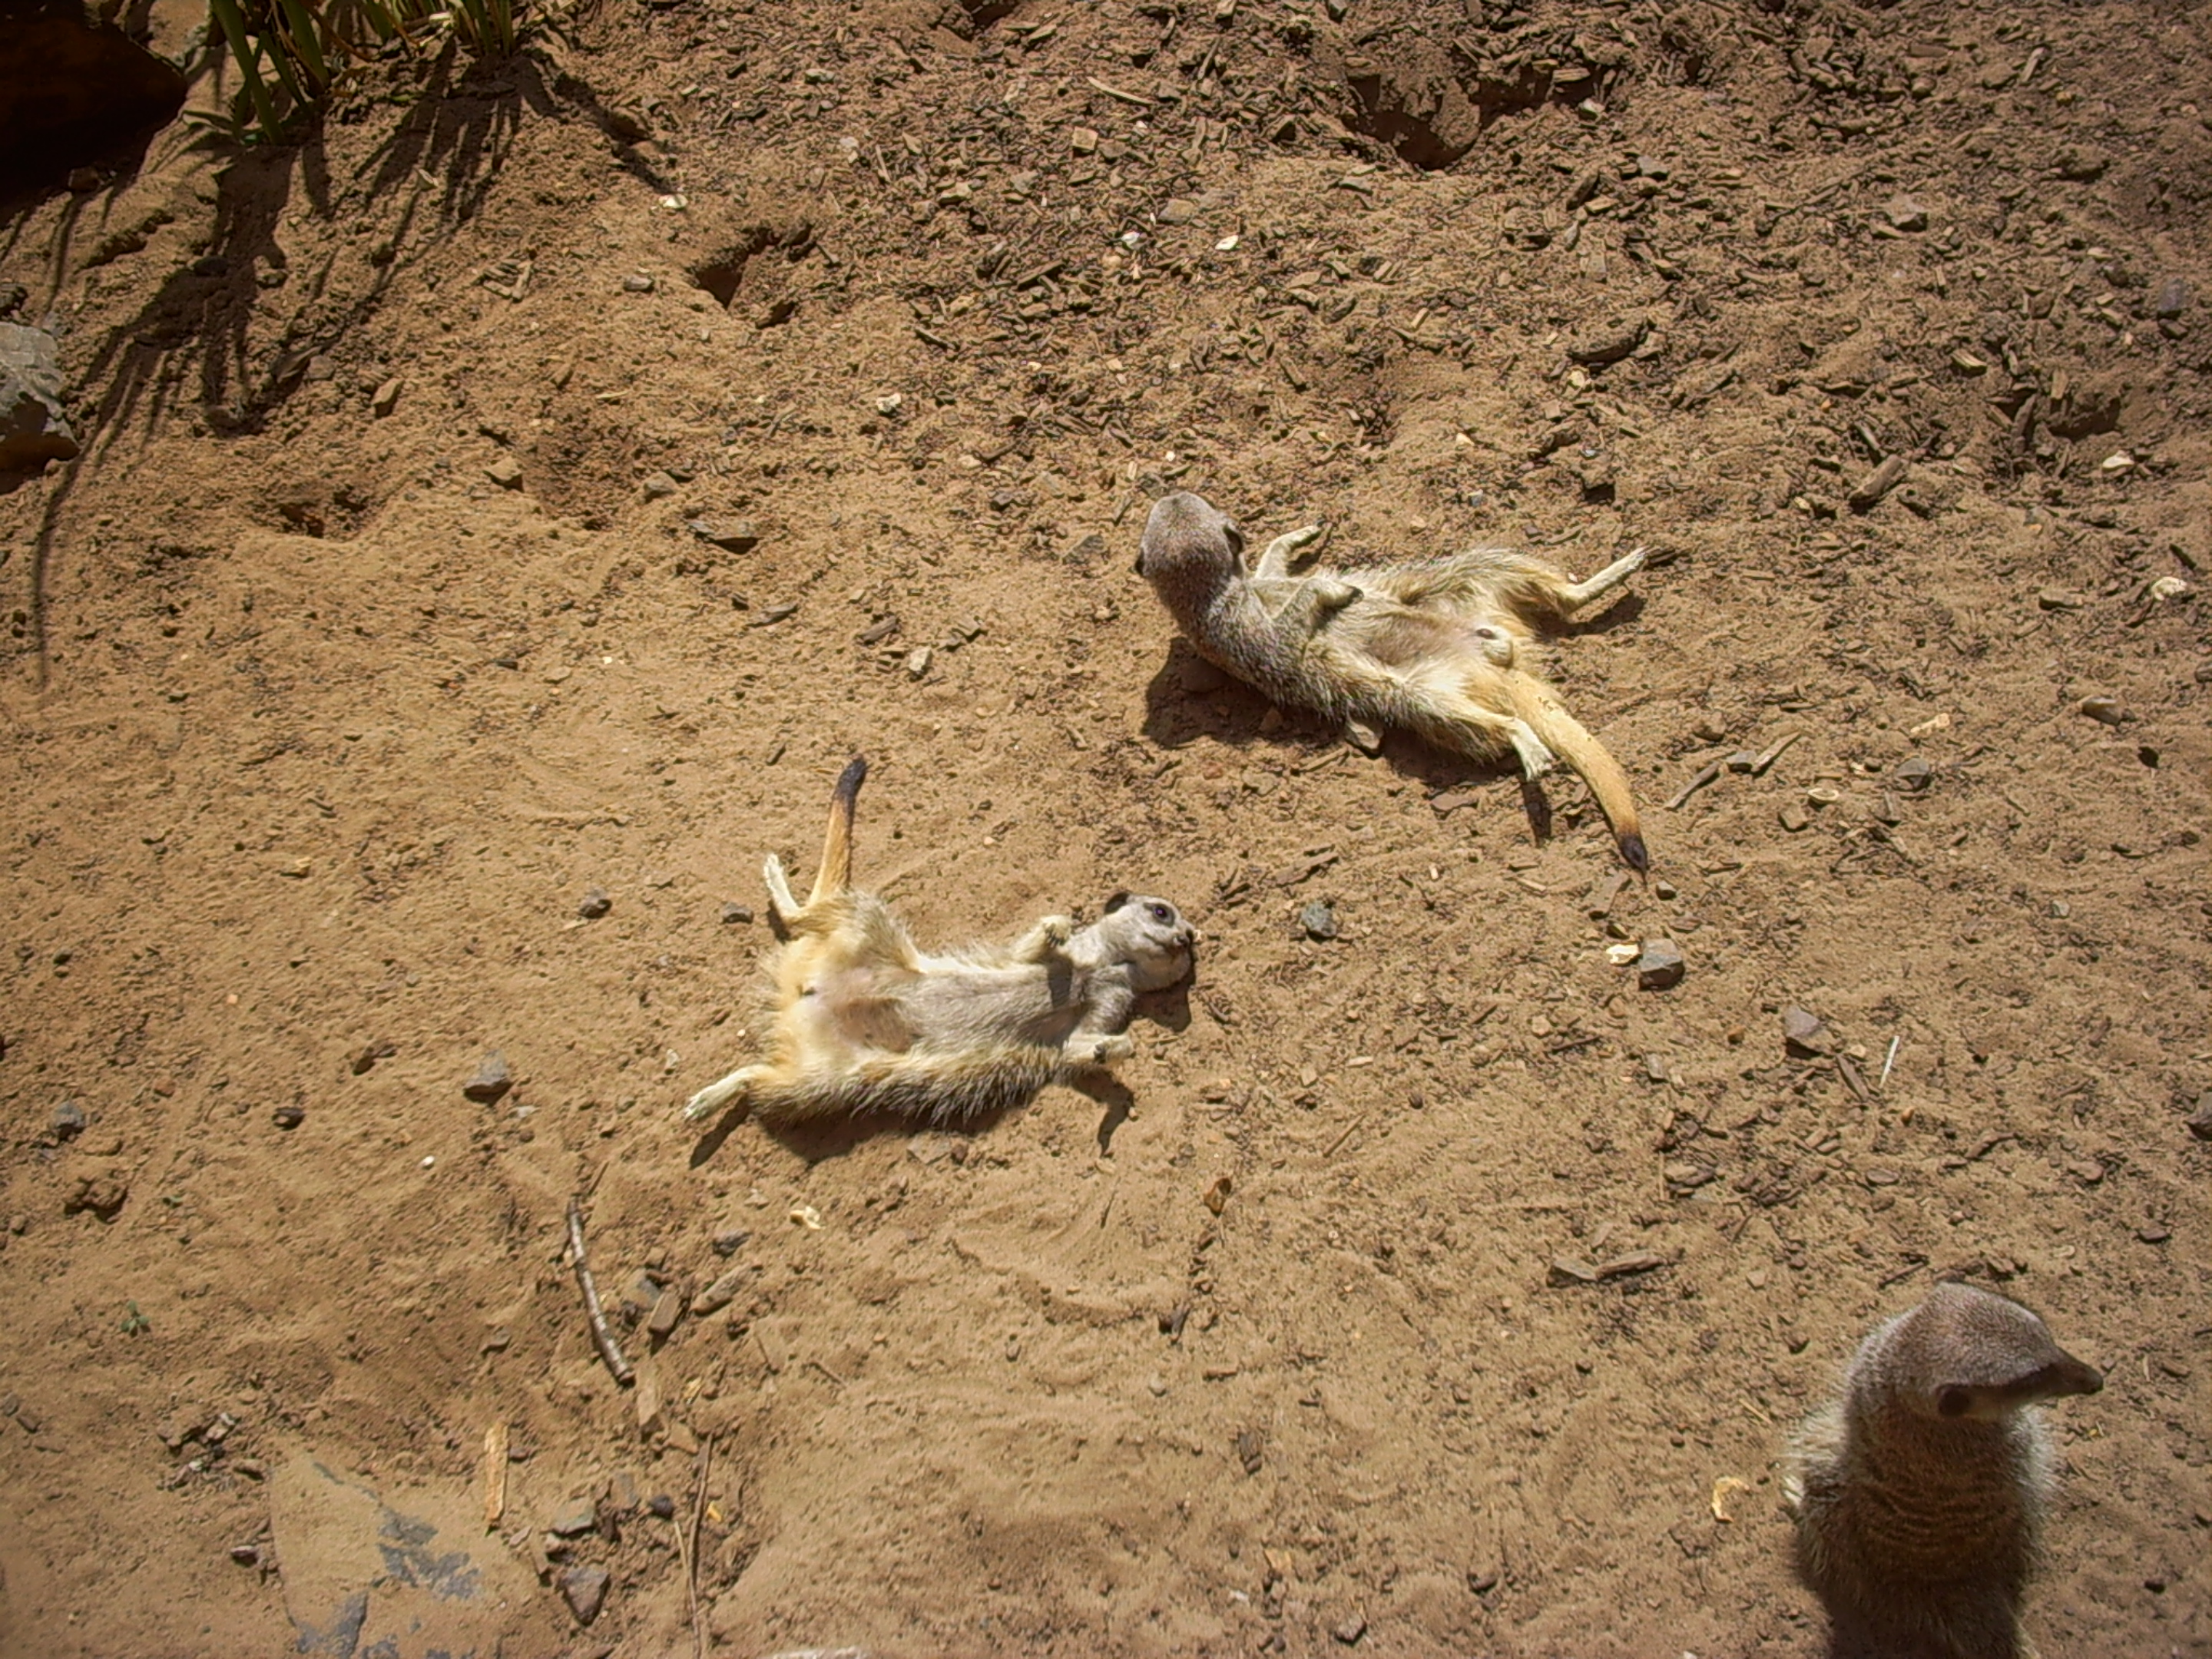 meerkats Sunbathing | Coolcat8849's Blog